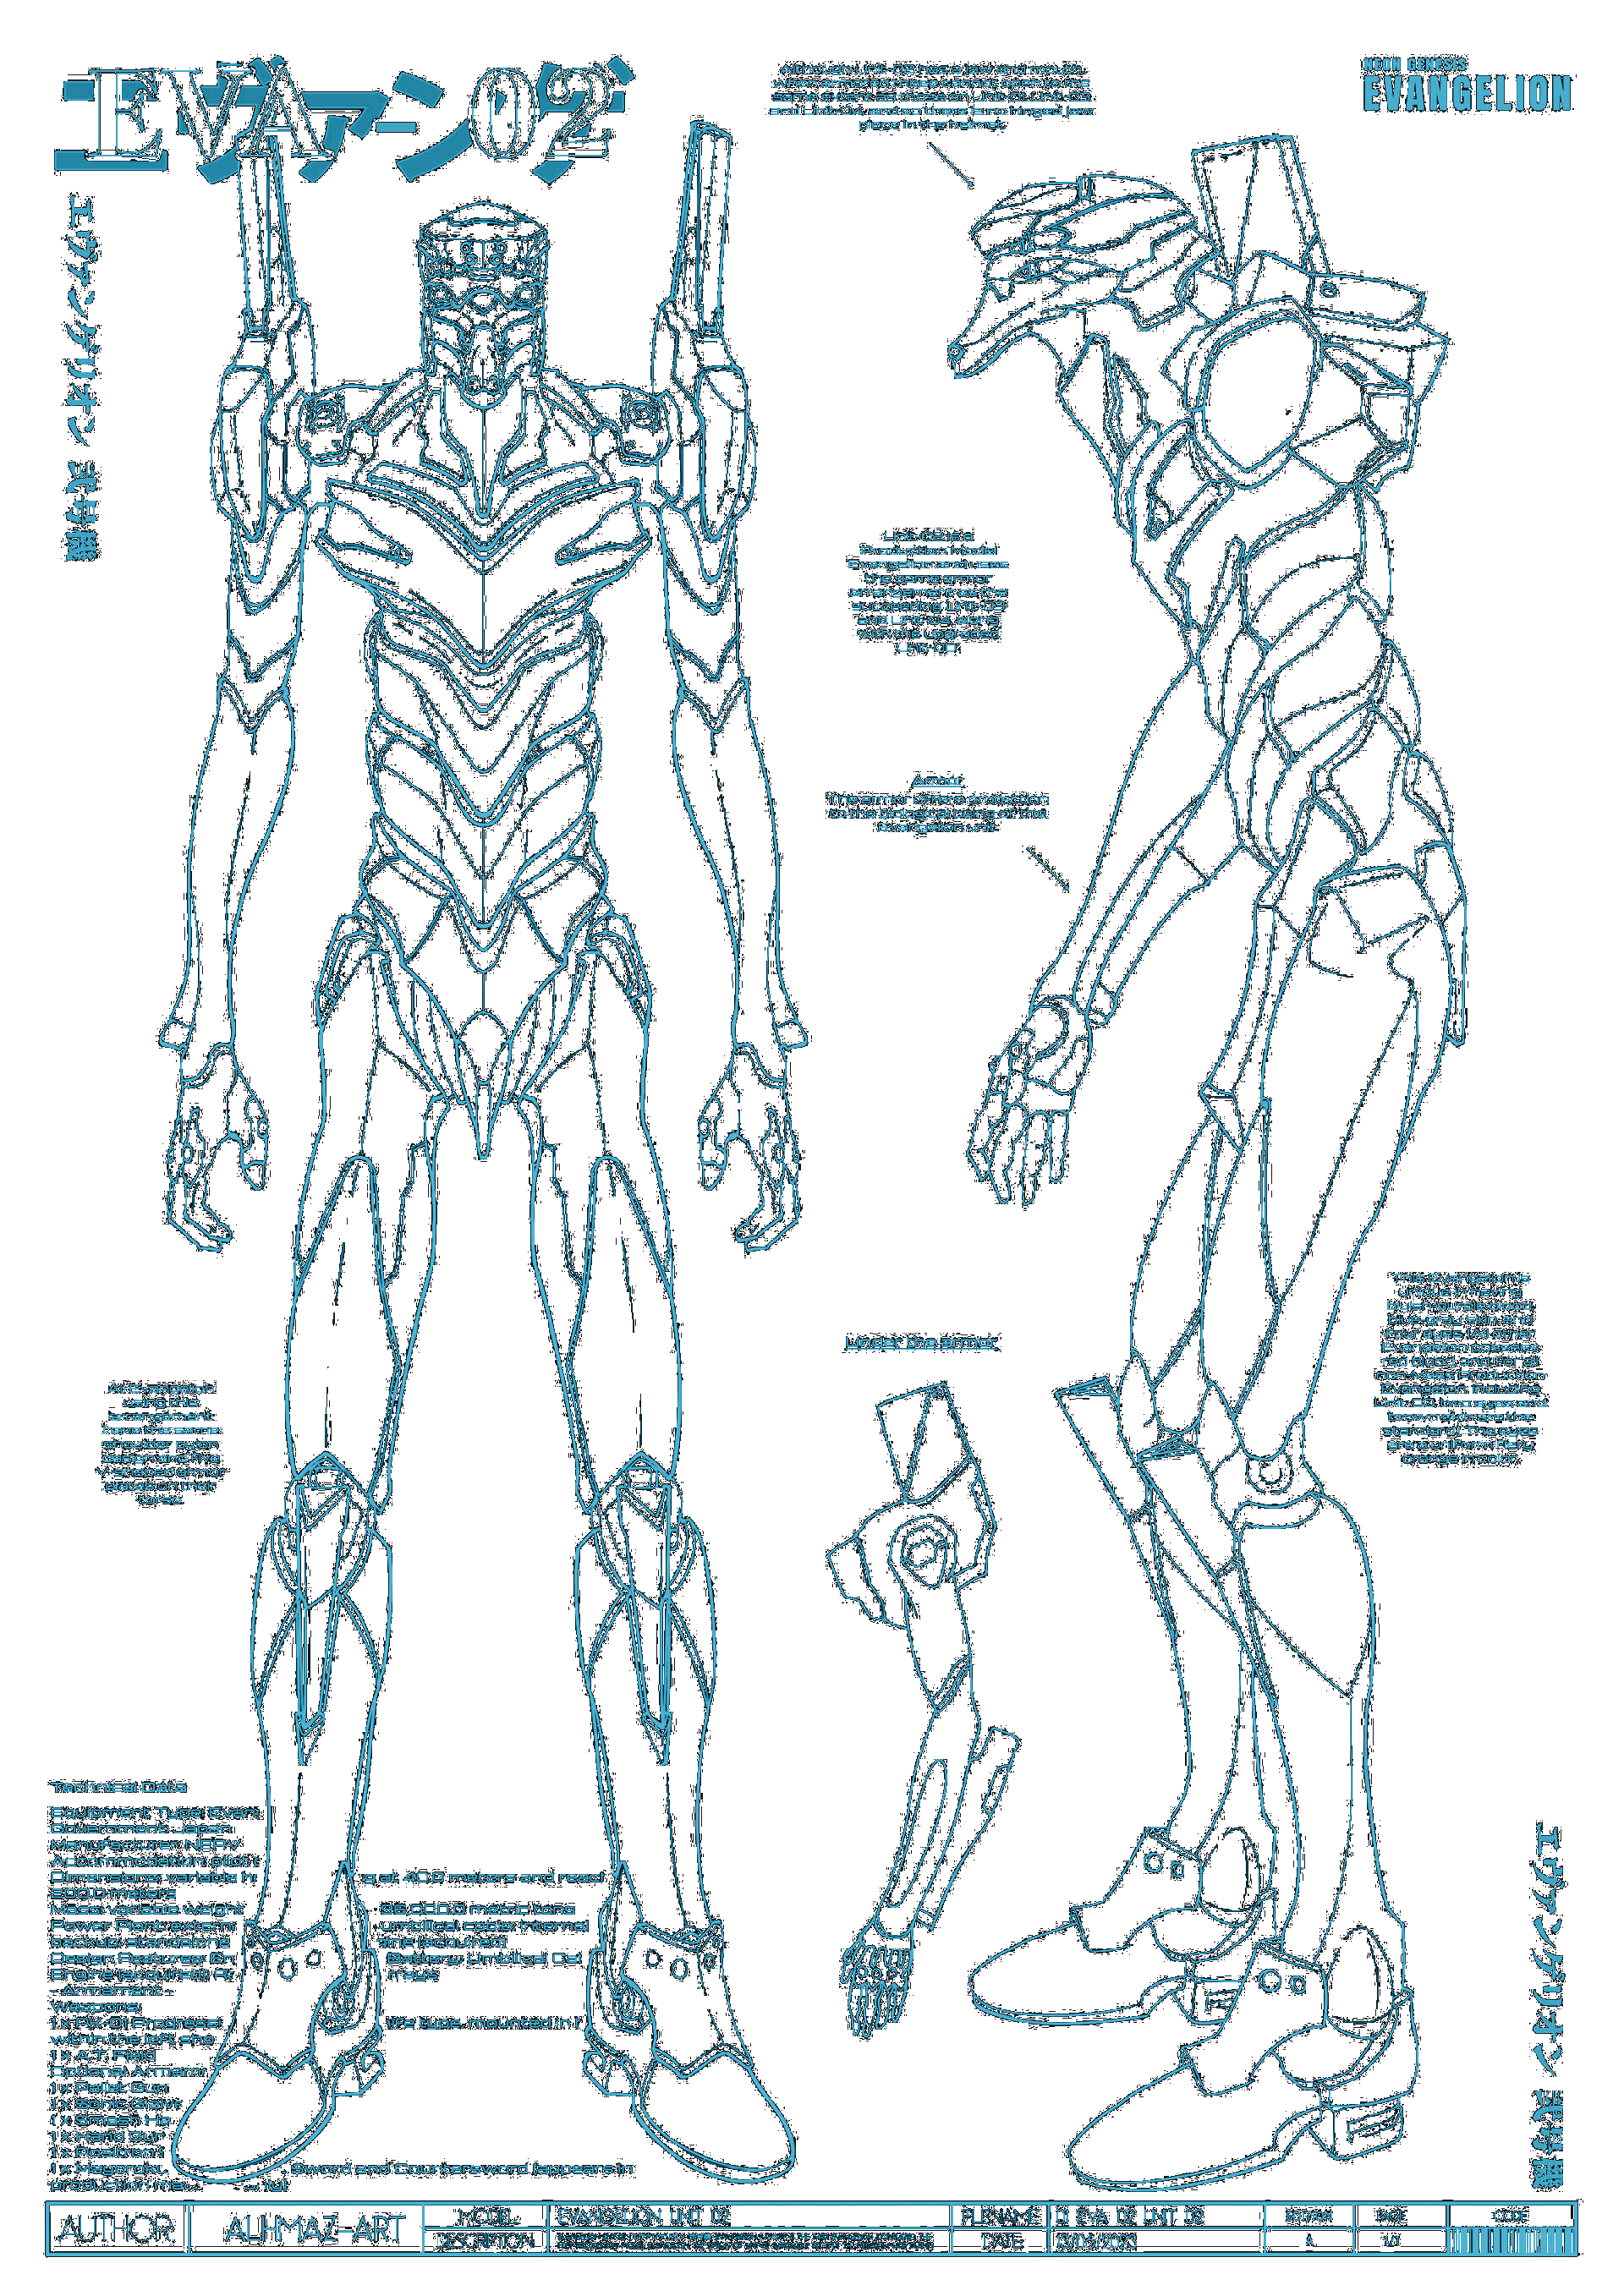 Unit02 blueprint (original figure made by Alhmaz-art)